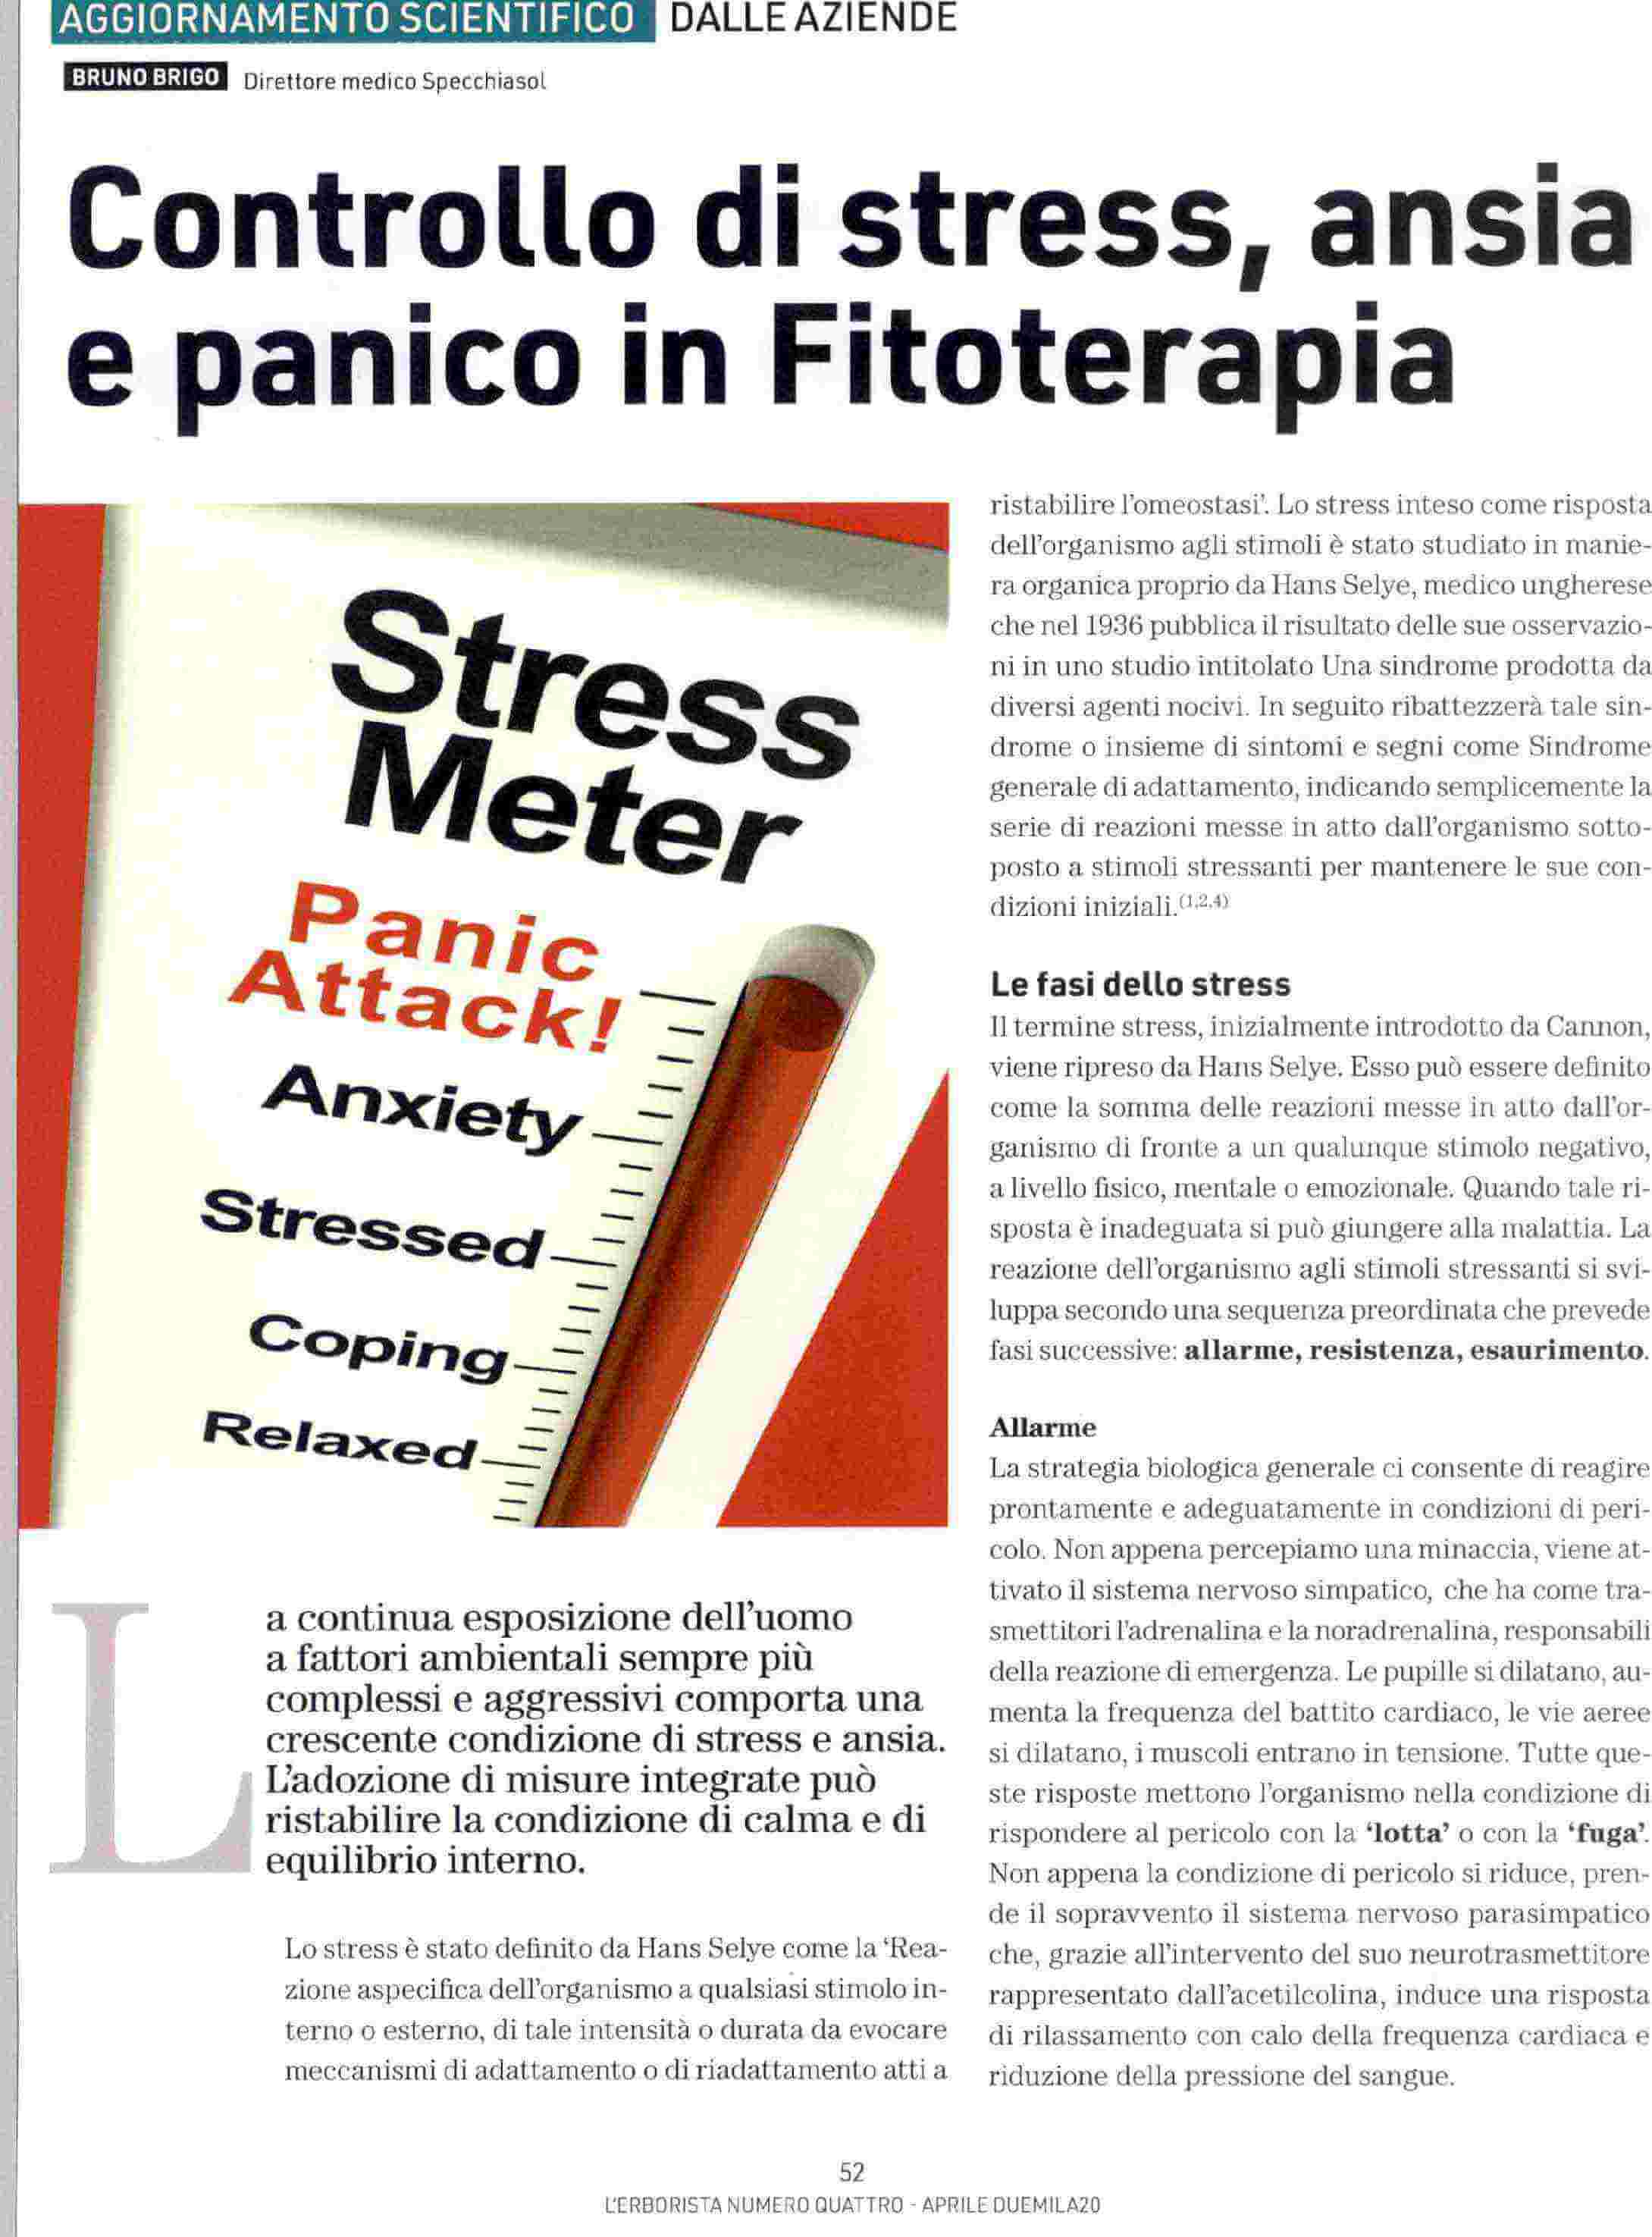 L'Erborista - Controllo di stress ansia e panico in fitoterapia